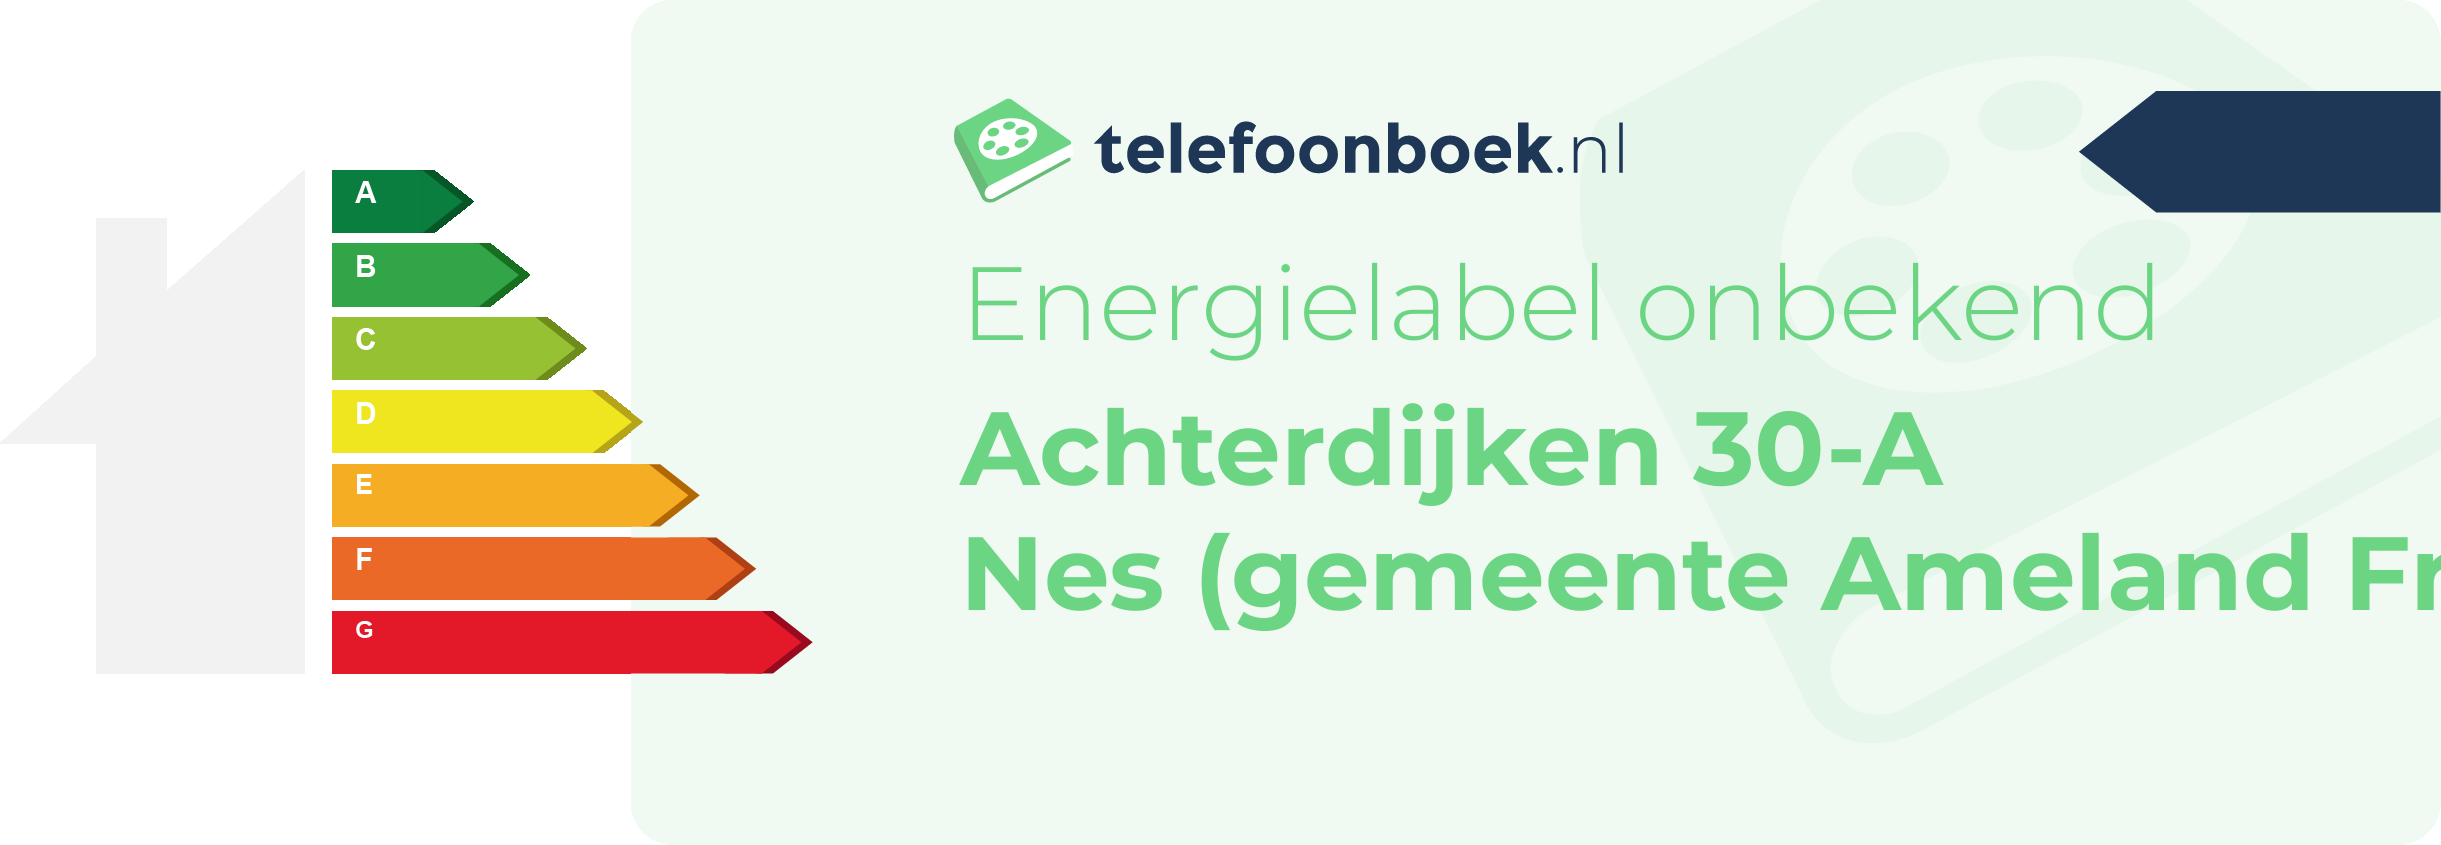 Energielabel Achterdijken 30-A Nes (gemeente Ameland Friesland)